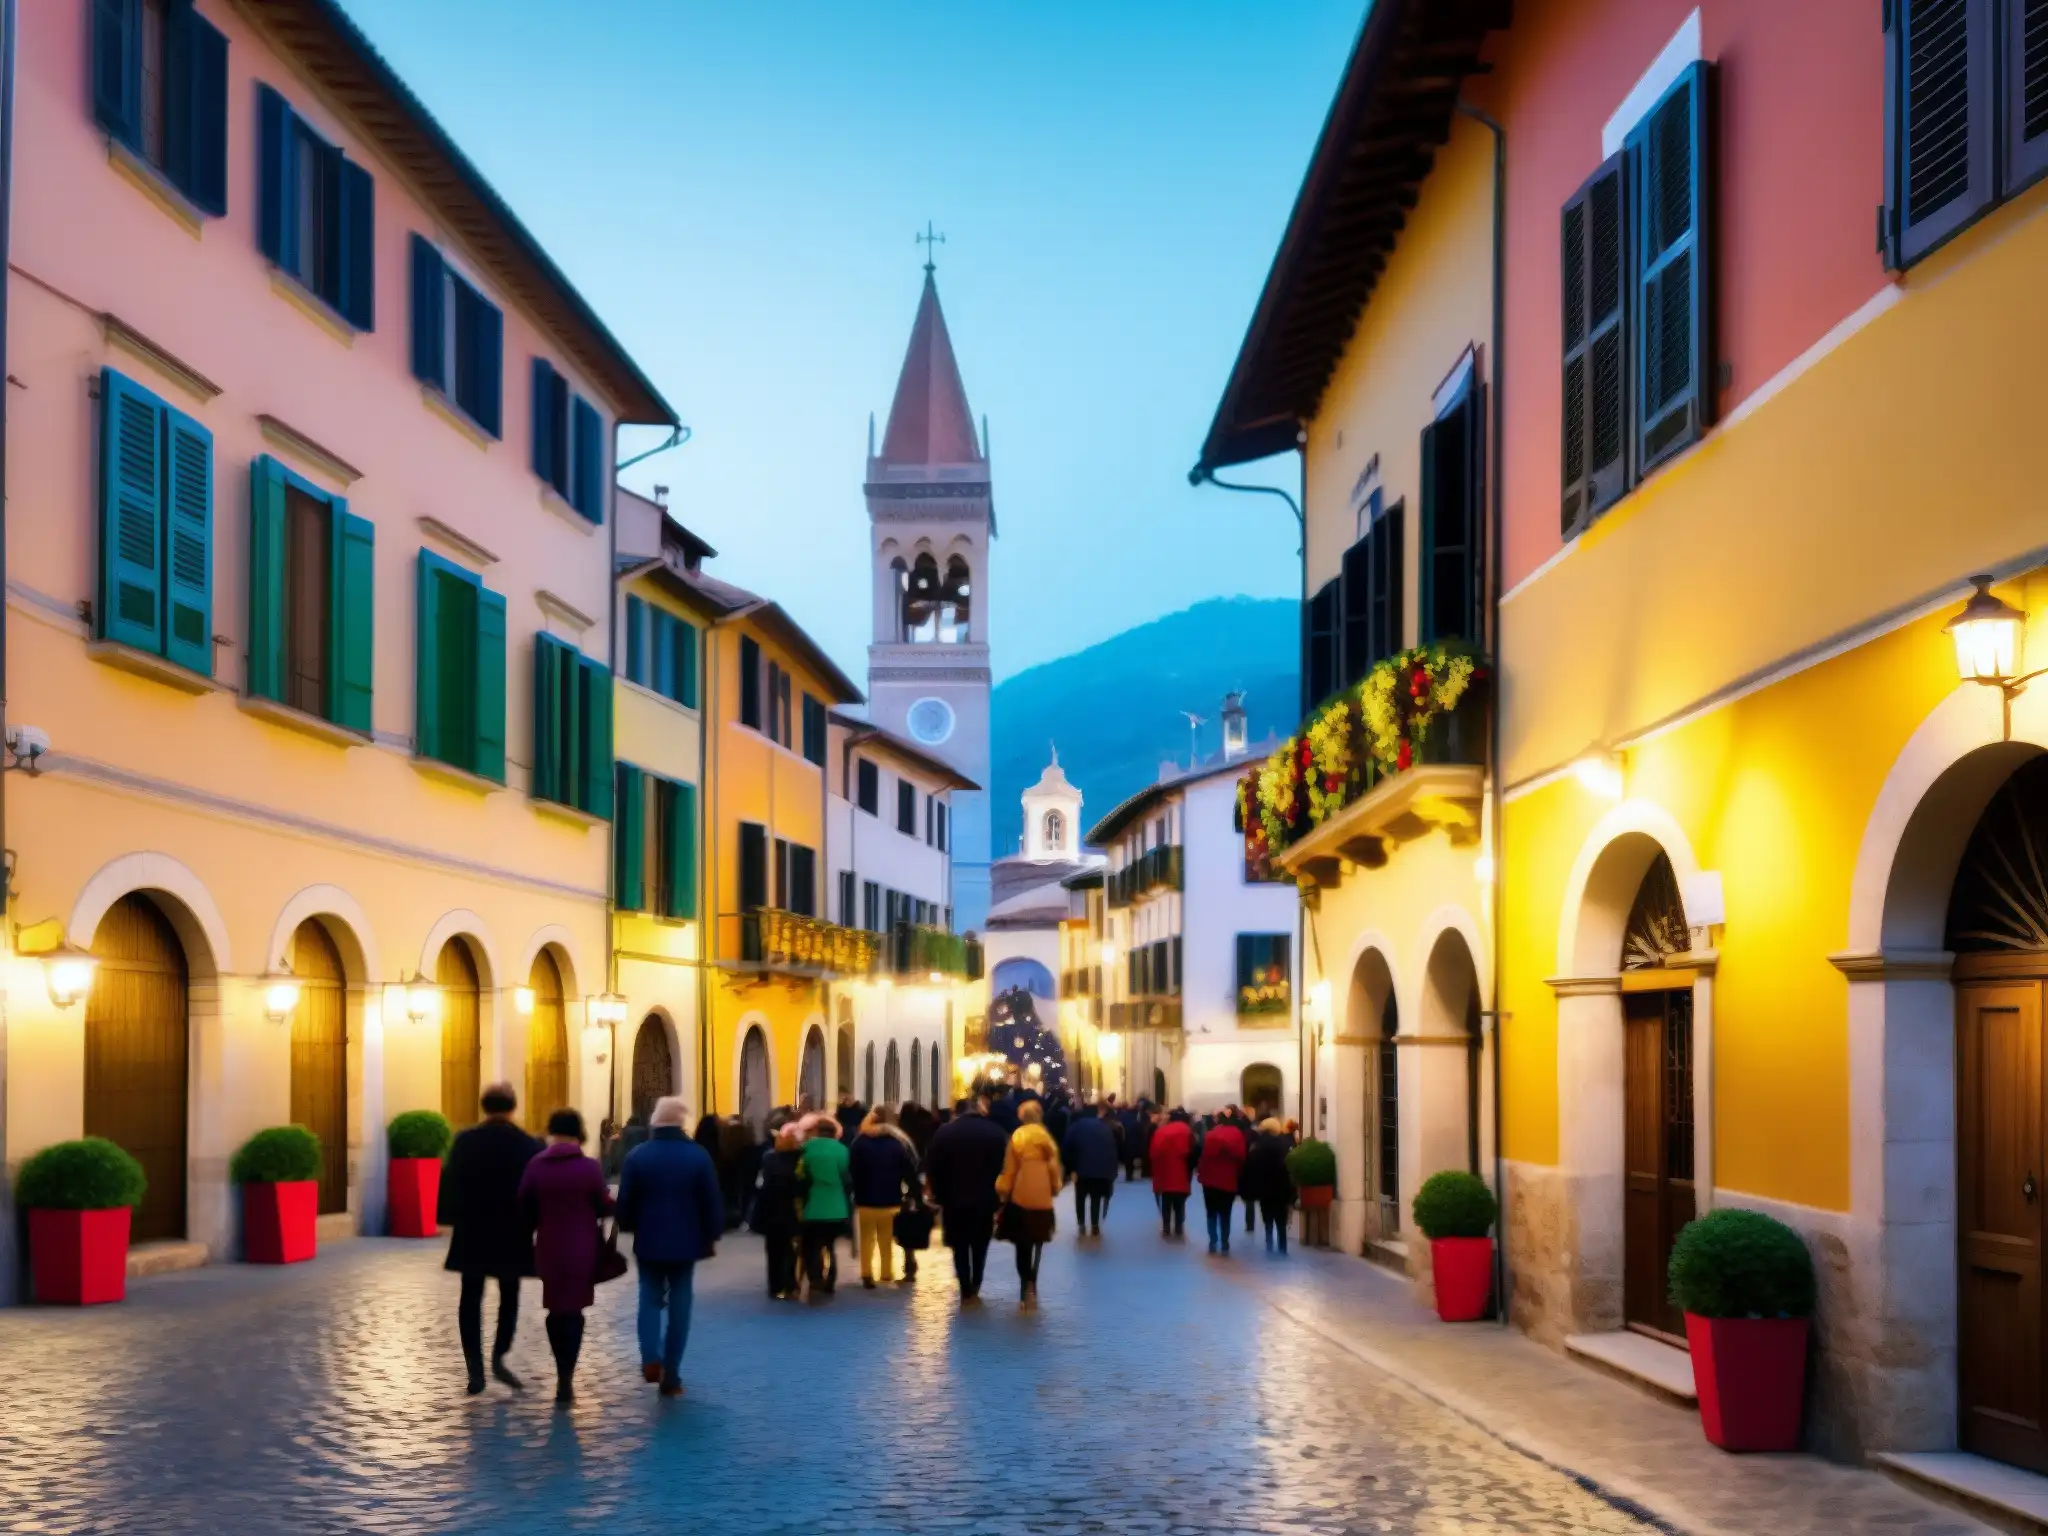 Imagen de un bullicioso pueblo italiano durante la temporada festiva, con calles empedradas, edificios coloridos y decoraciones festivas